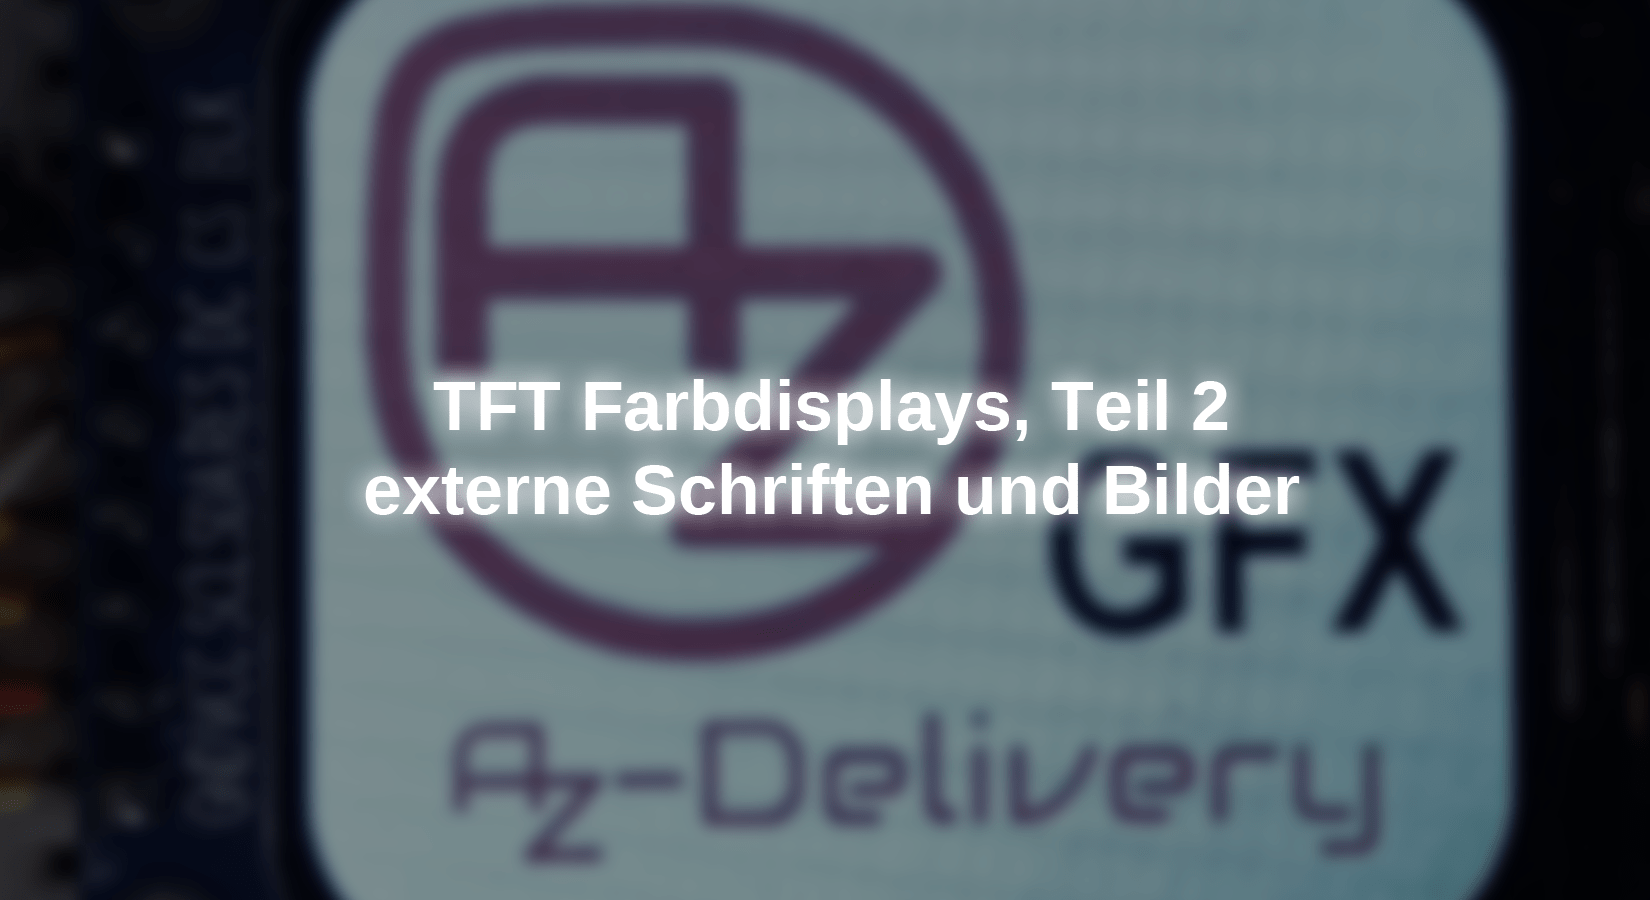 TFT Farbdisplays Teil 2, externe Schriften und Bilder - AZ-Delivery